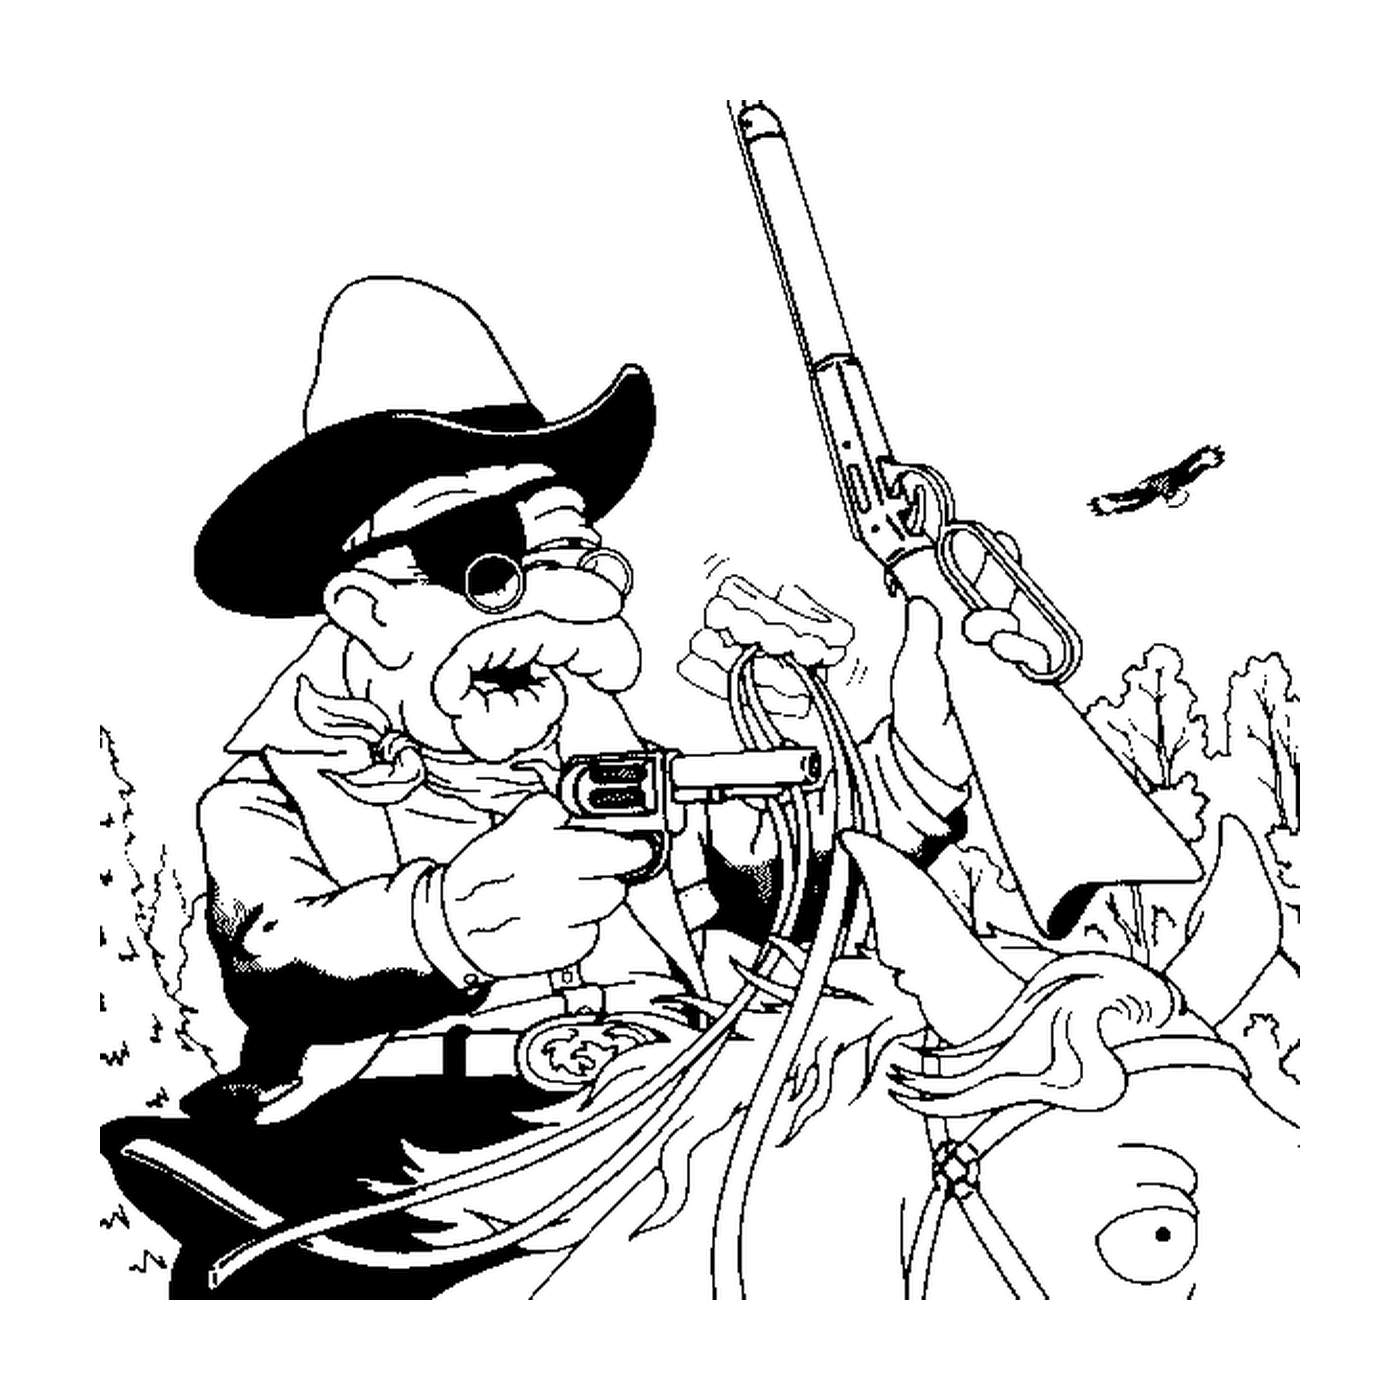  Abraham ist ein Cowboy, alter Mann mit Hut und Waffe 